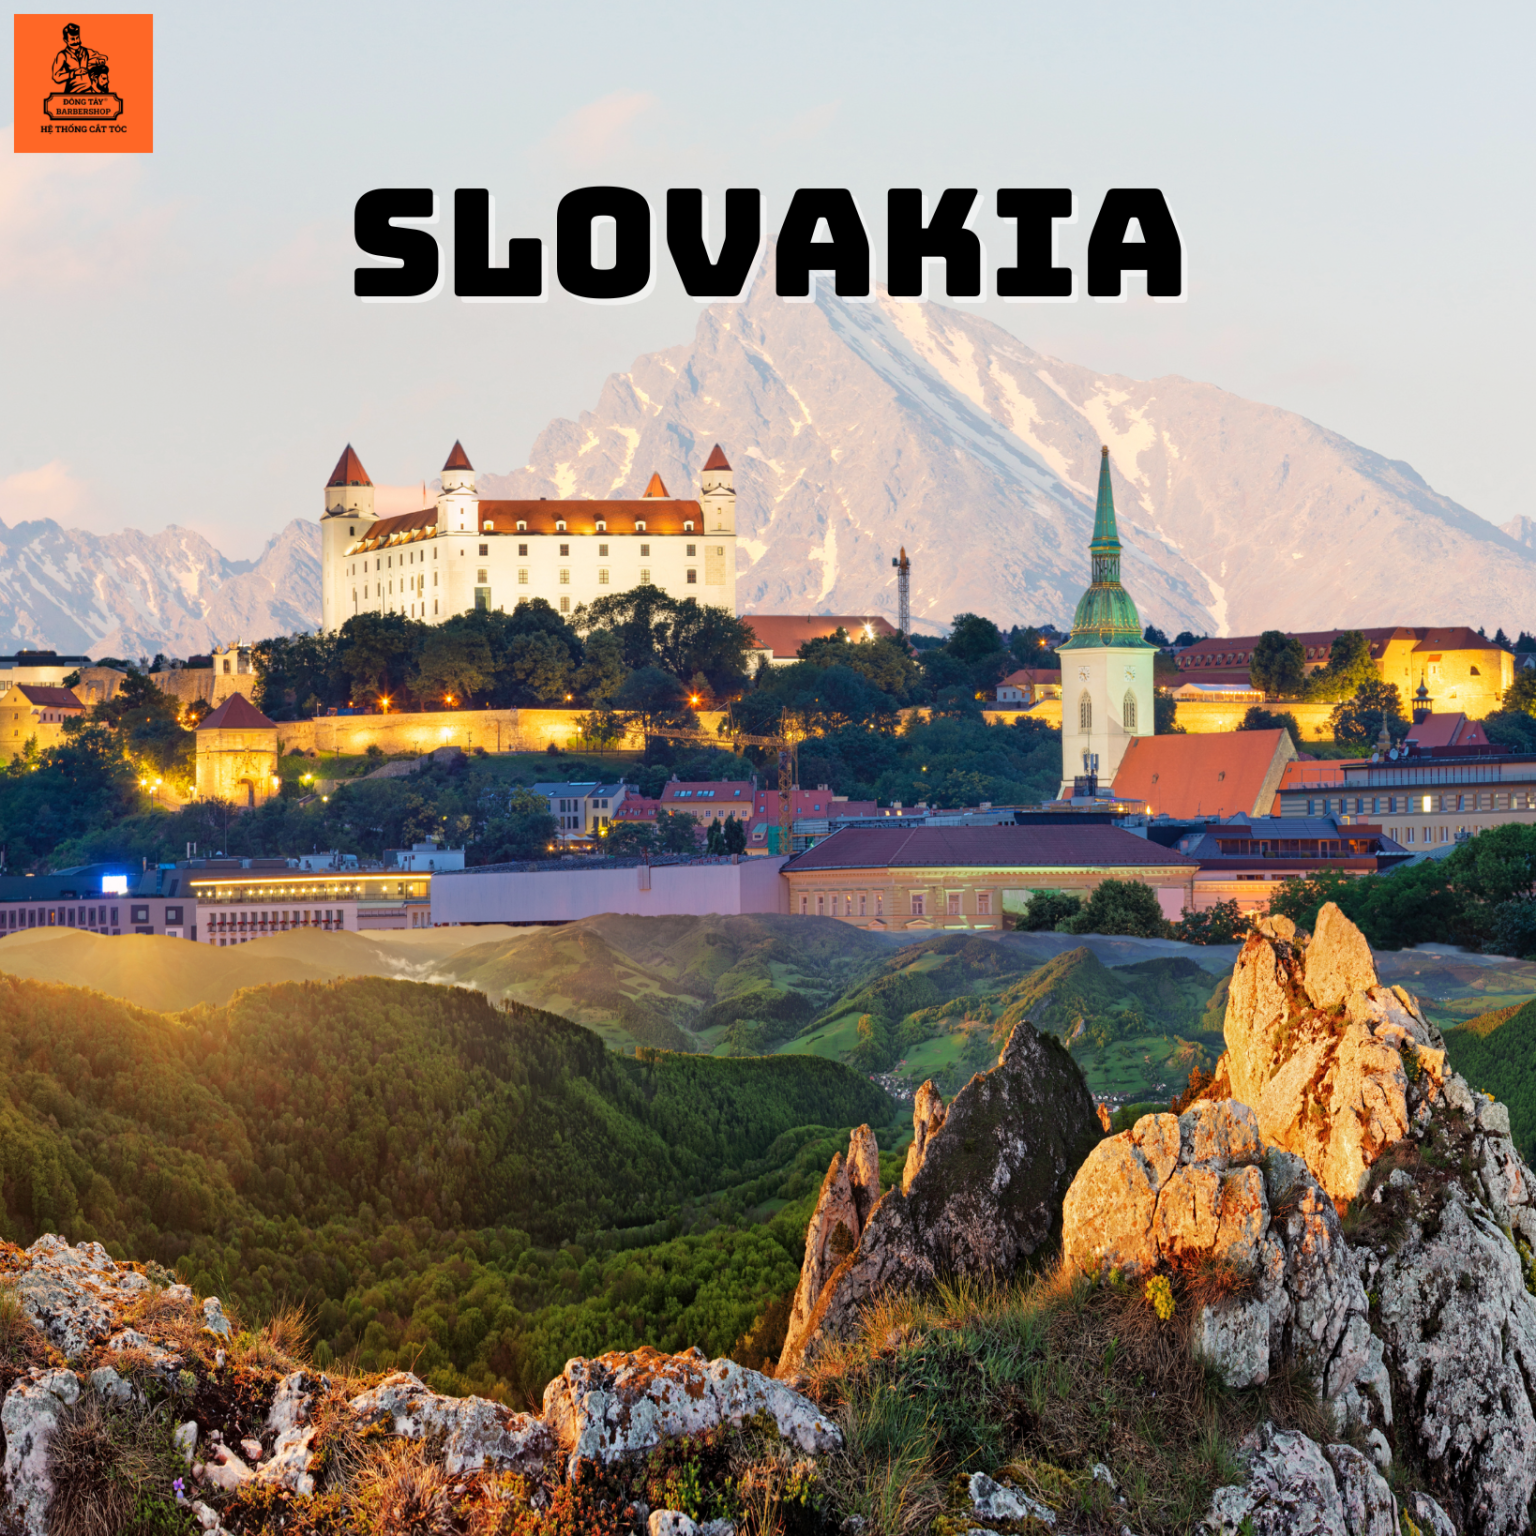 スロバキアの素晴らしい観光スポットと食文化